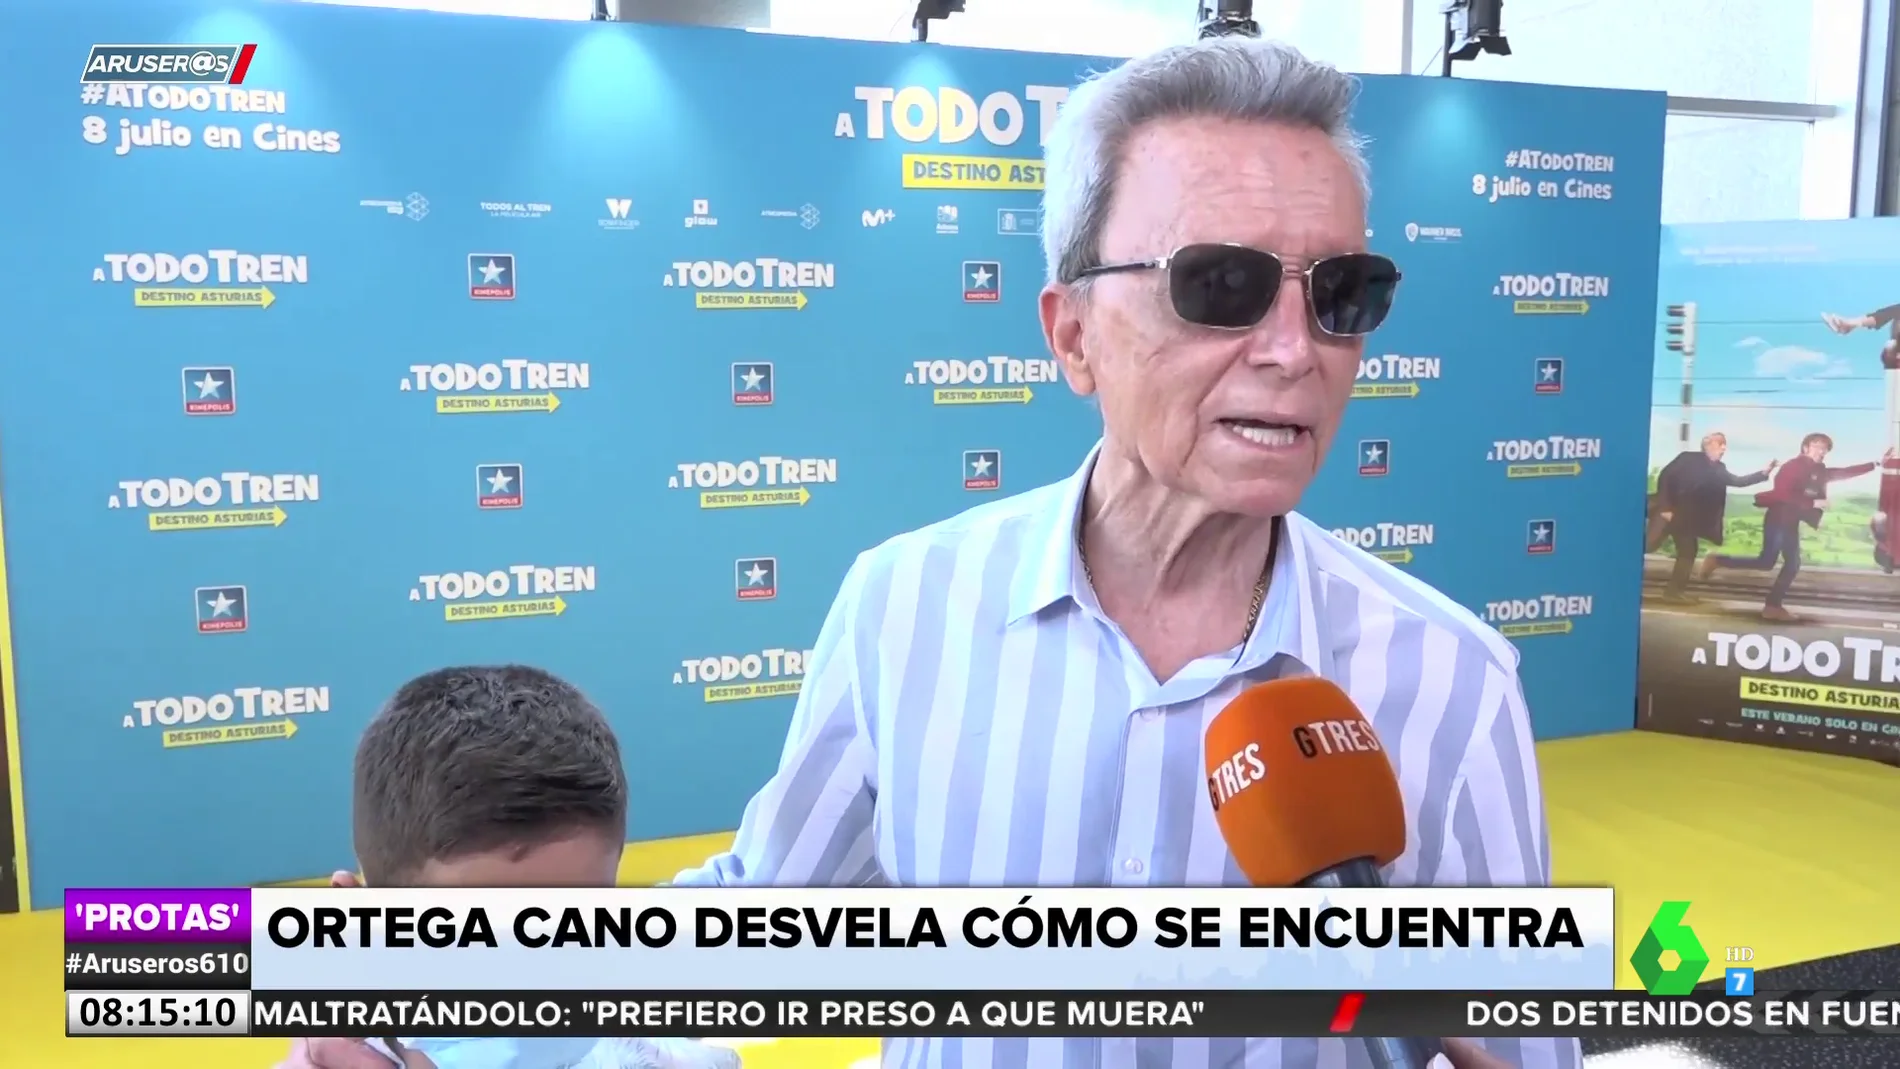 José Ortega Cano se pronuncia sobre su estado de salud: "Me han pedido que haga más ejercicio"